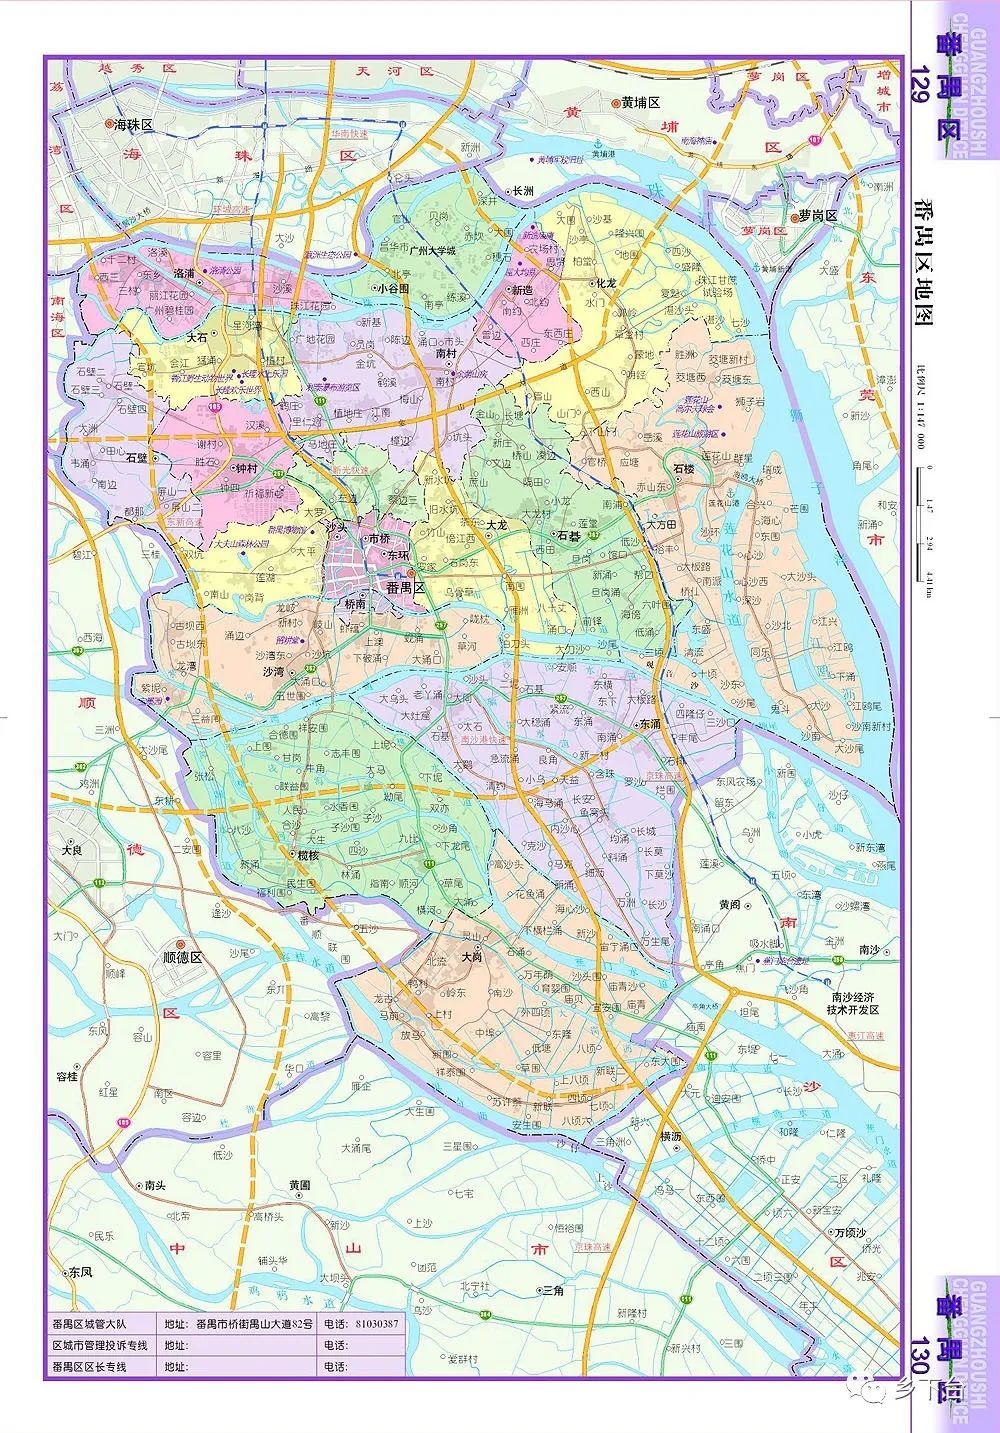 这是2005年南沙分家后番禺区的样子地图